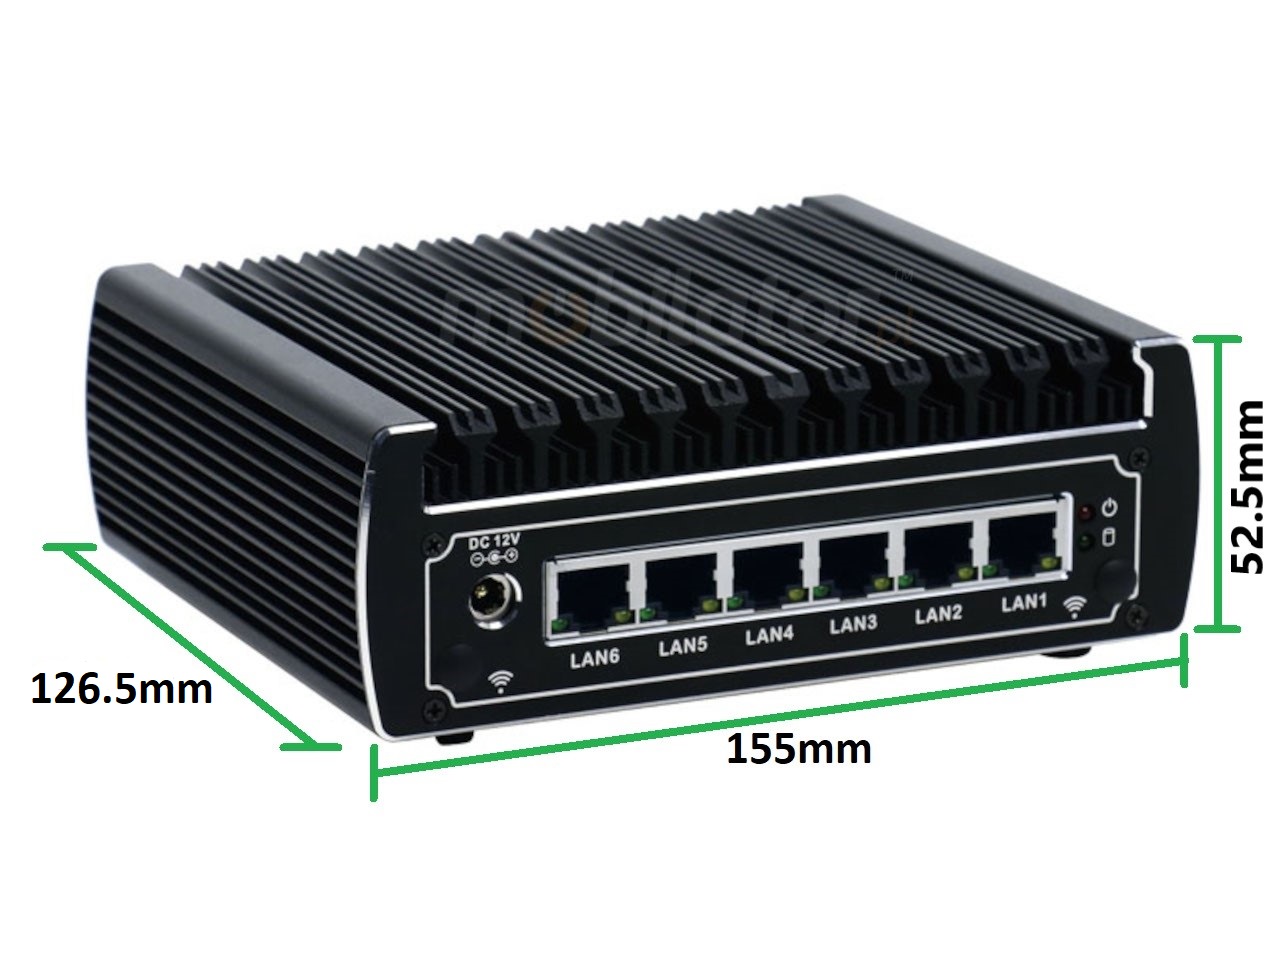  IBOX N133 wymiary przemysłowy mały szybki niezawodny intel fanless industrial small LAN INTEL i3